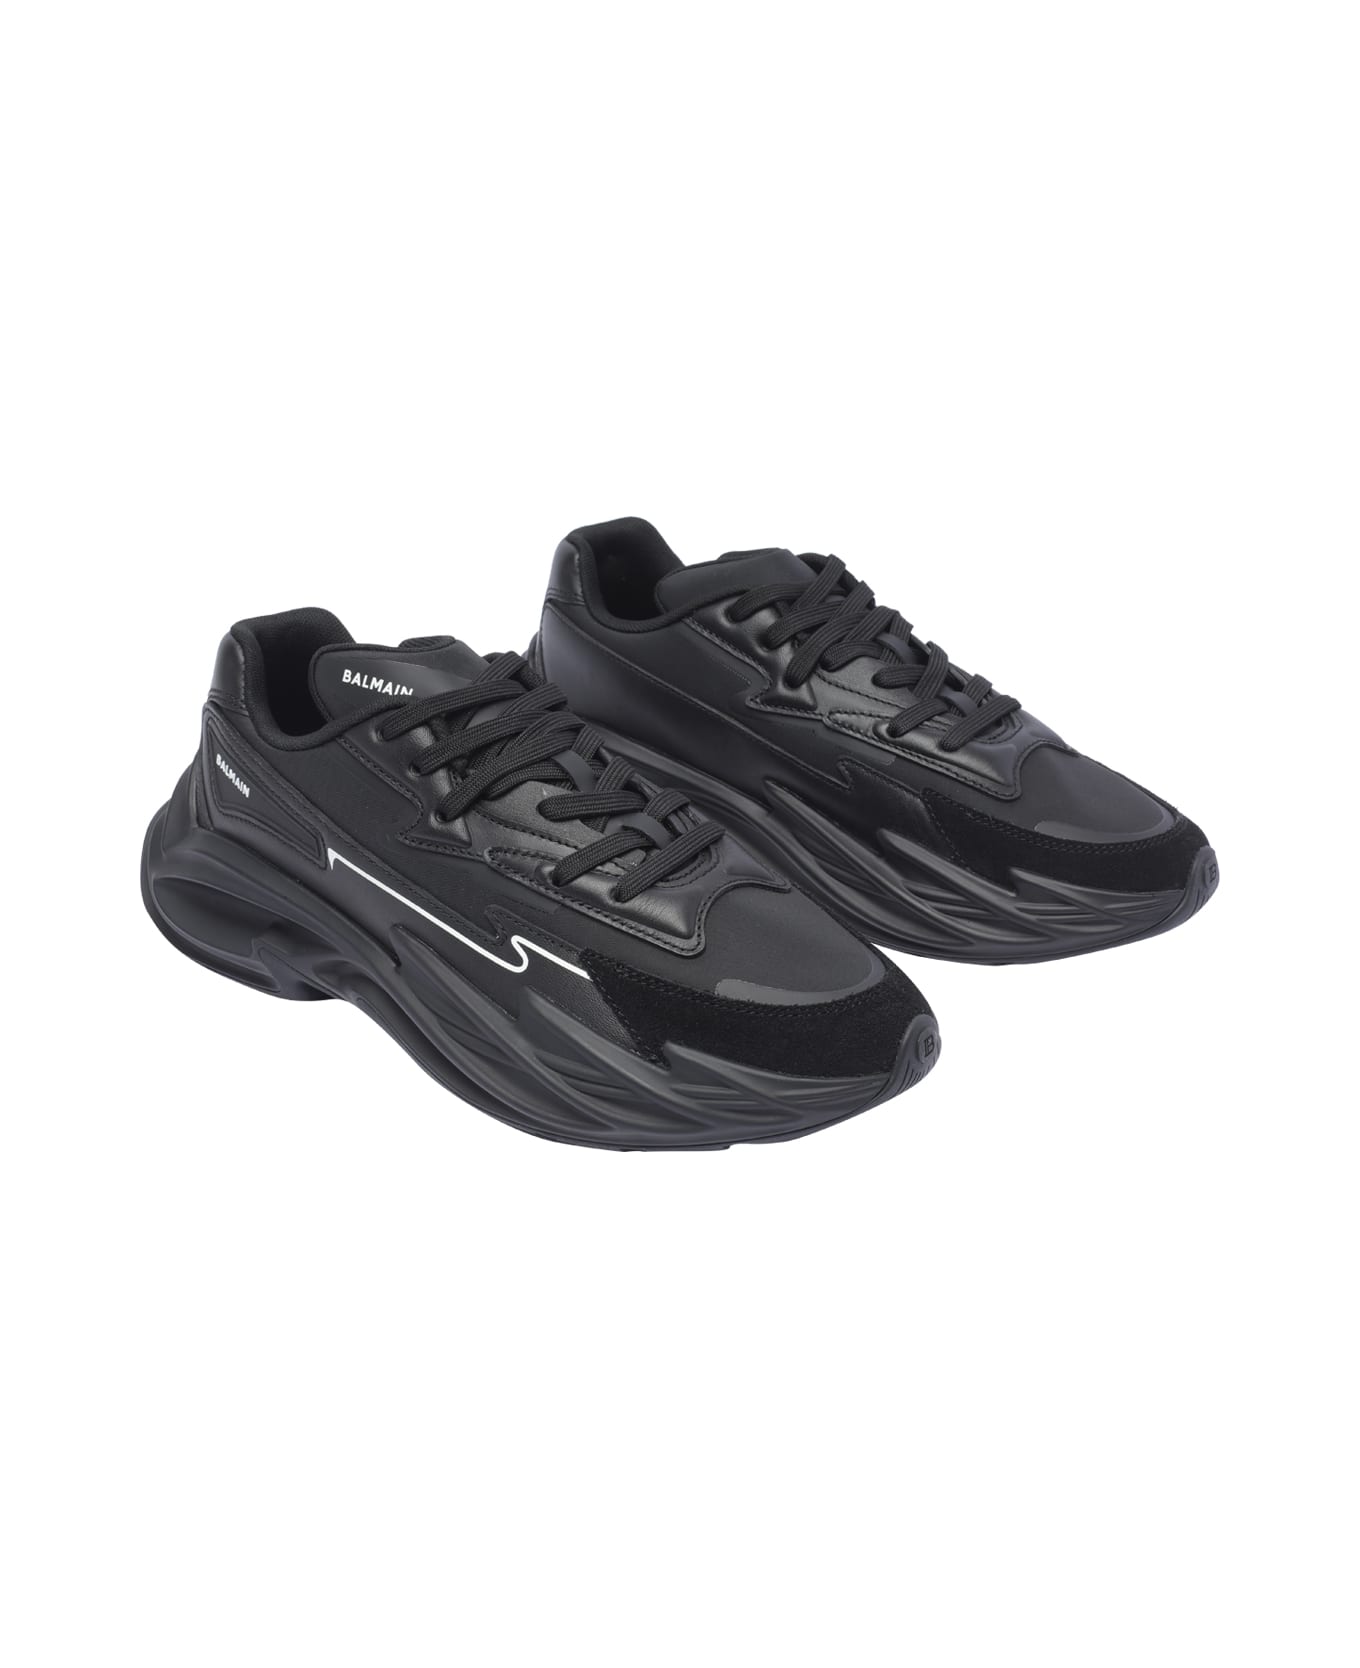 Balmain Run-low Sneakers - Black